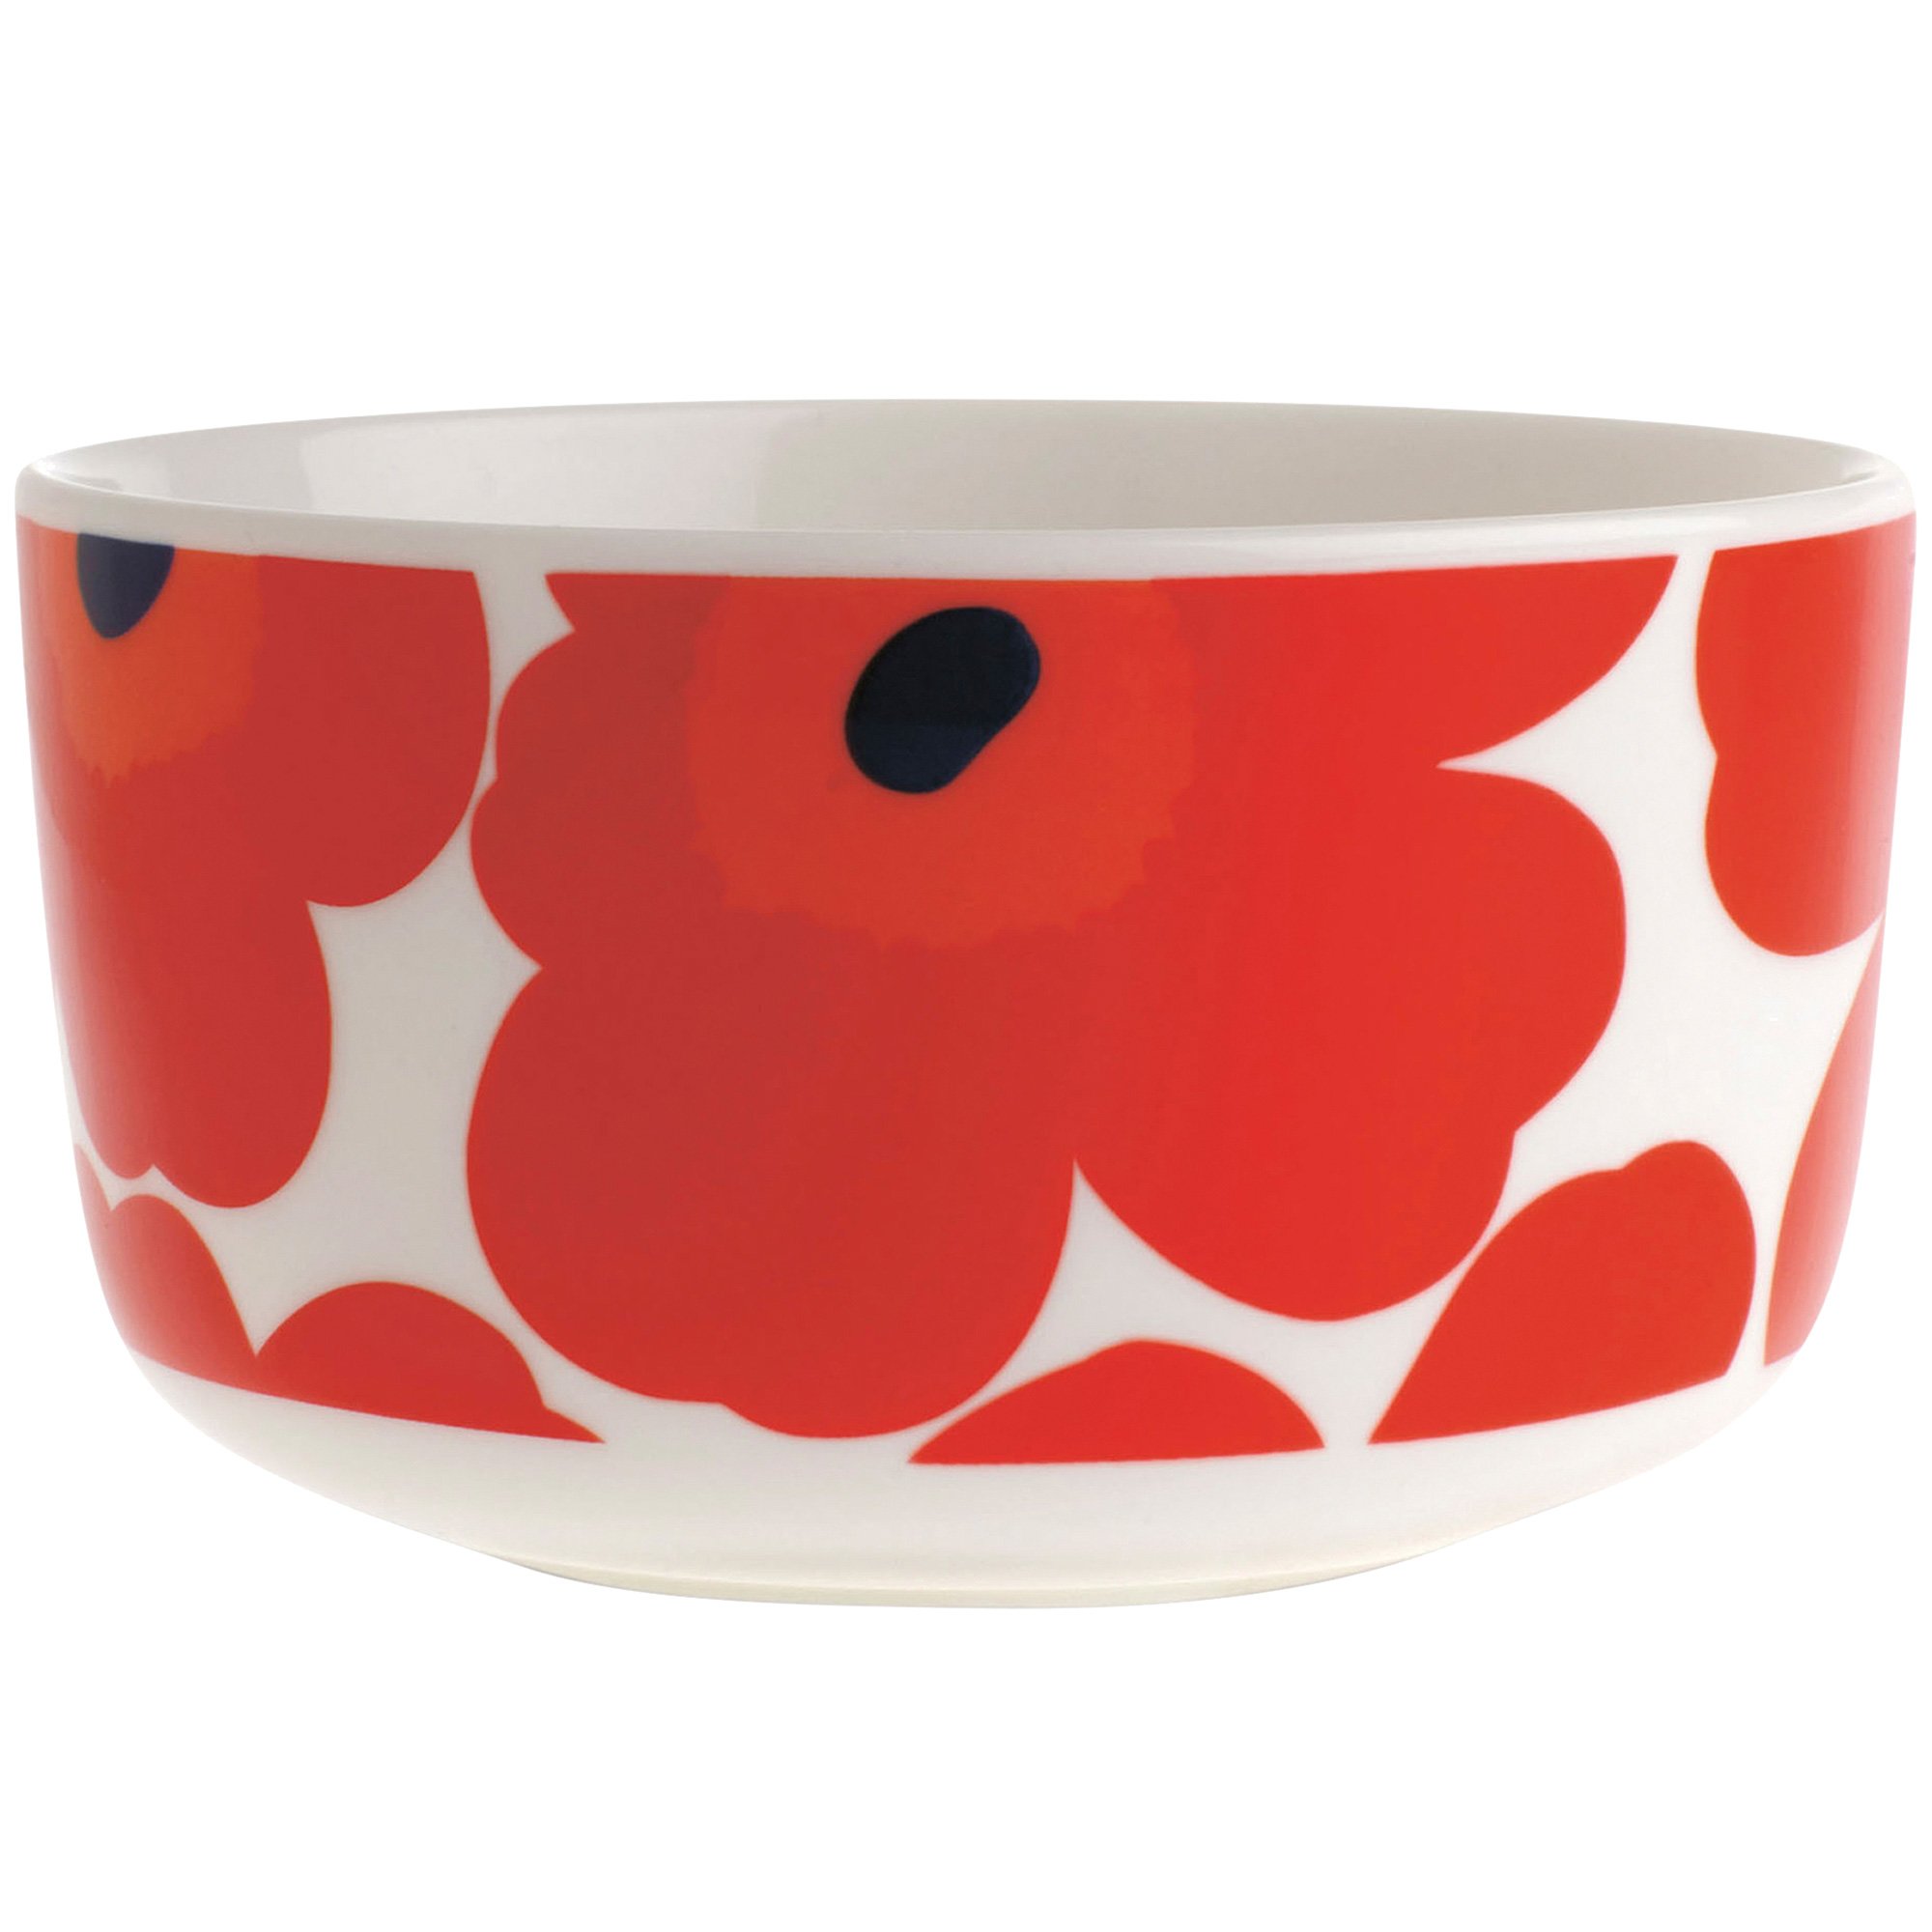 4: Marimekko Unikko skål, 5 dl., rød